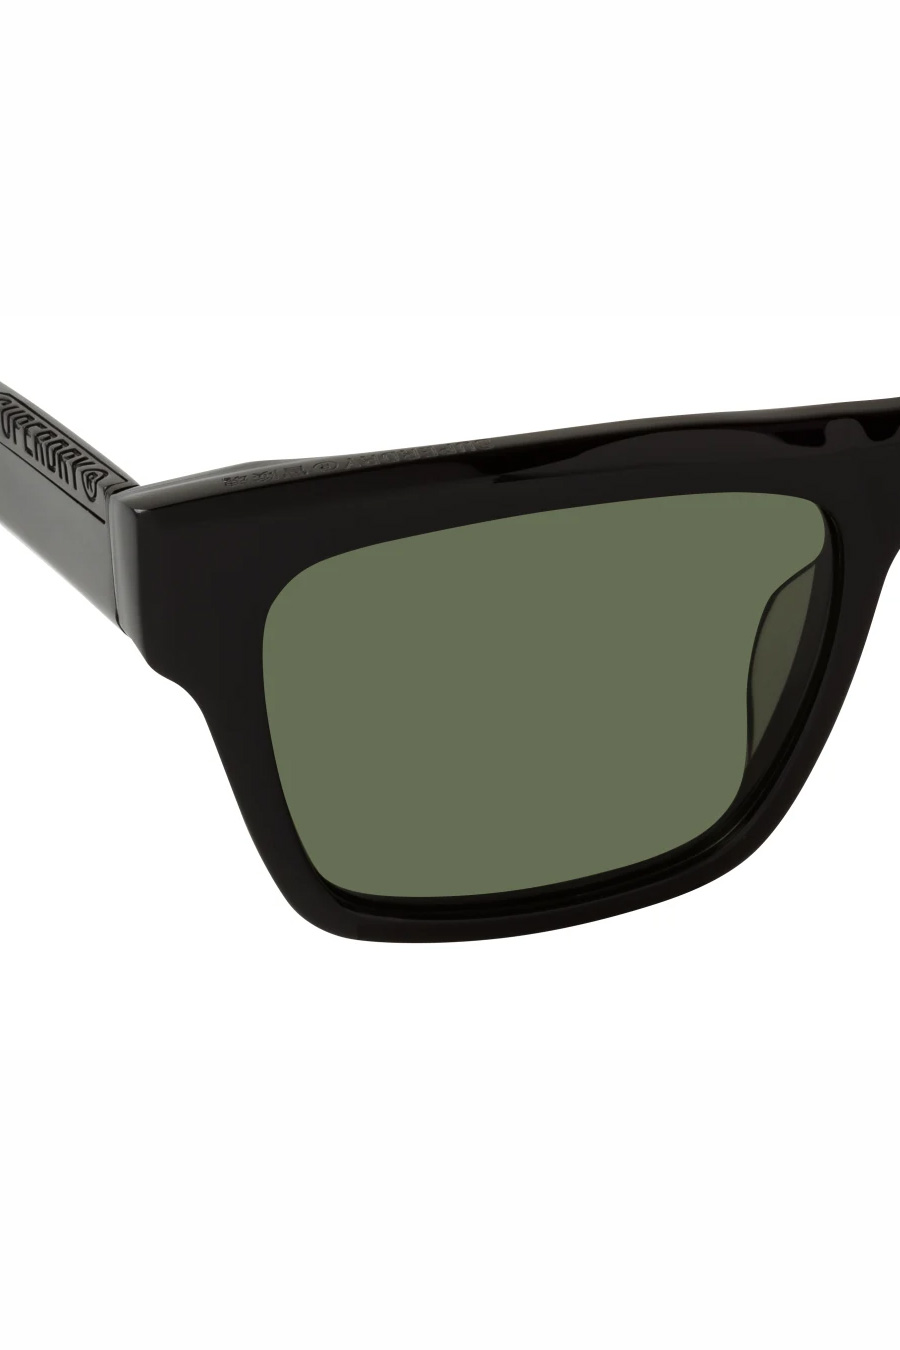 Солнечные очки SUPERDRY SDS-5011-104